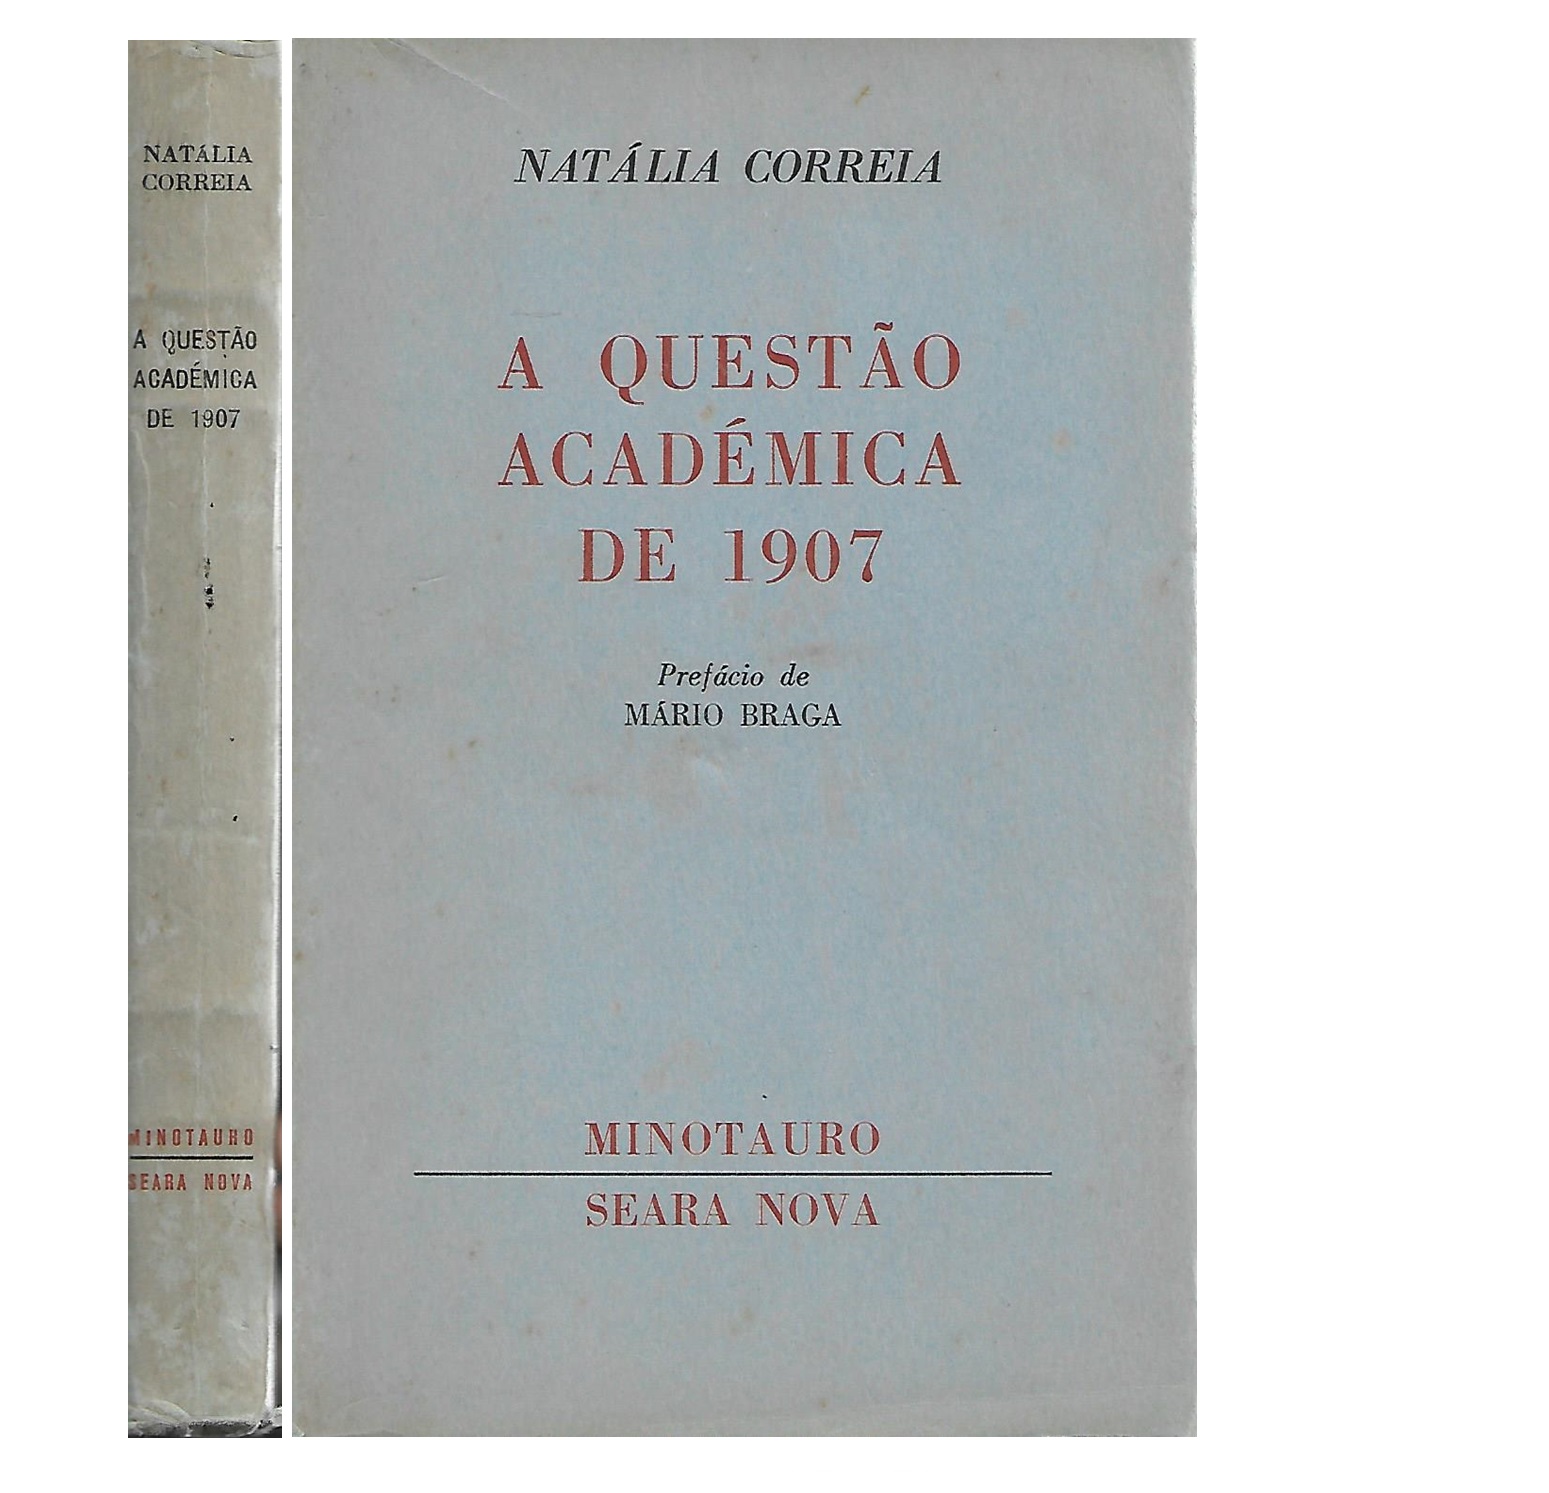 A QUESTÃO ACADÉMICA DE 1907